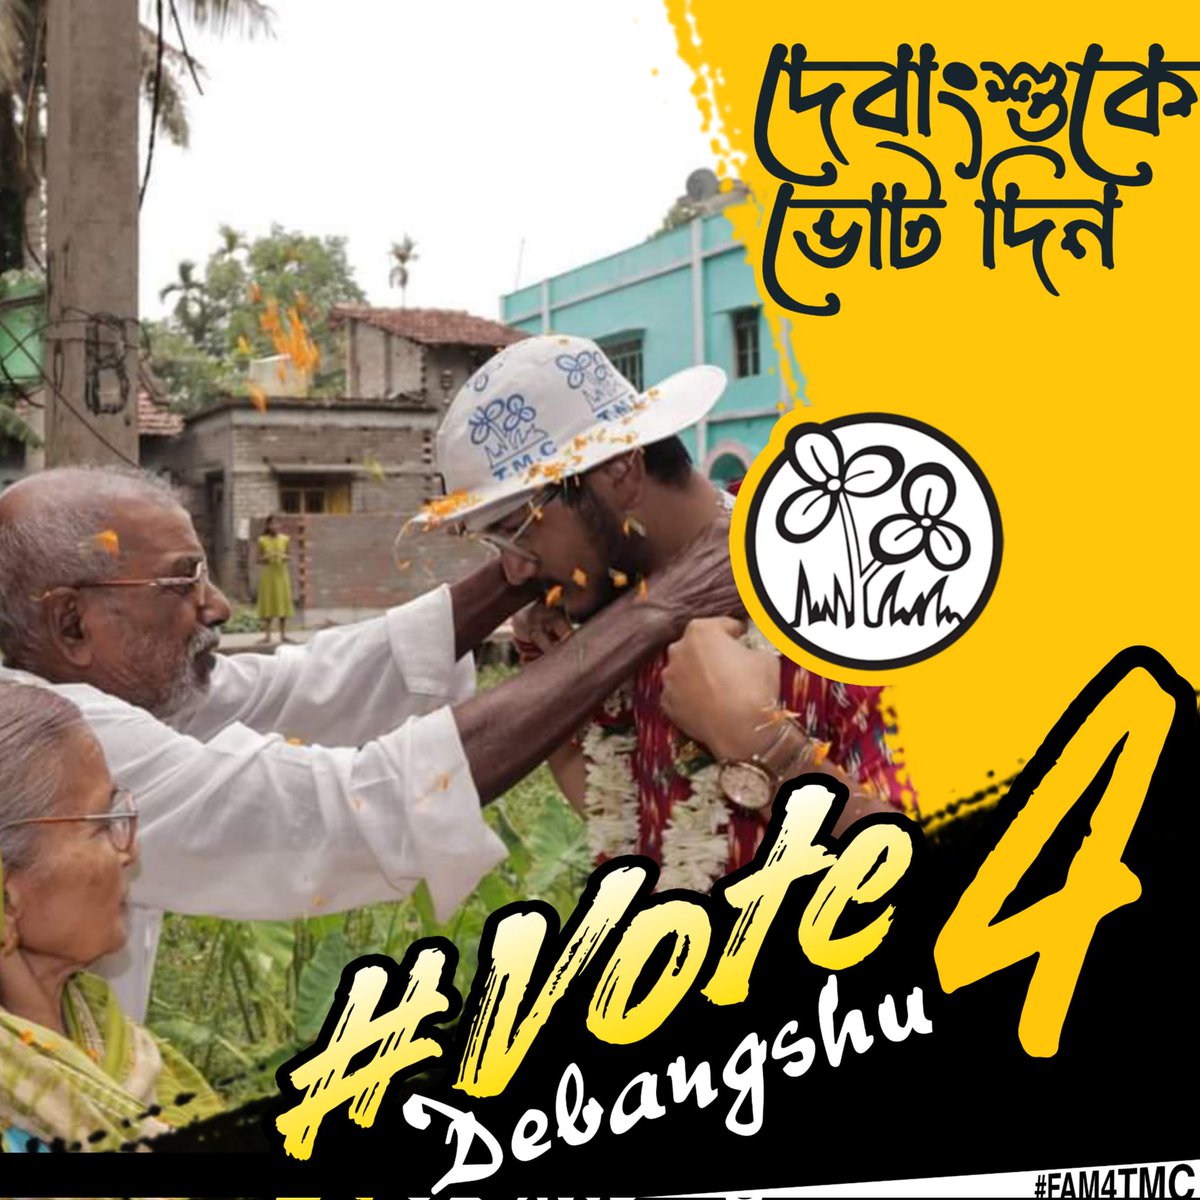 ২৫ শে মে আসছে সুযোগ 
আসছে সেই সুদিন 
জোড়া ফুলে ভোট টা দিয়ে 
সোনার বাংলা উপহার নিন।
#Vote4Debangshu
#FAM4TMC